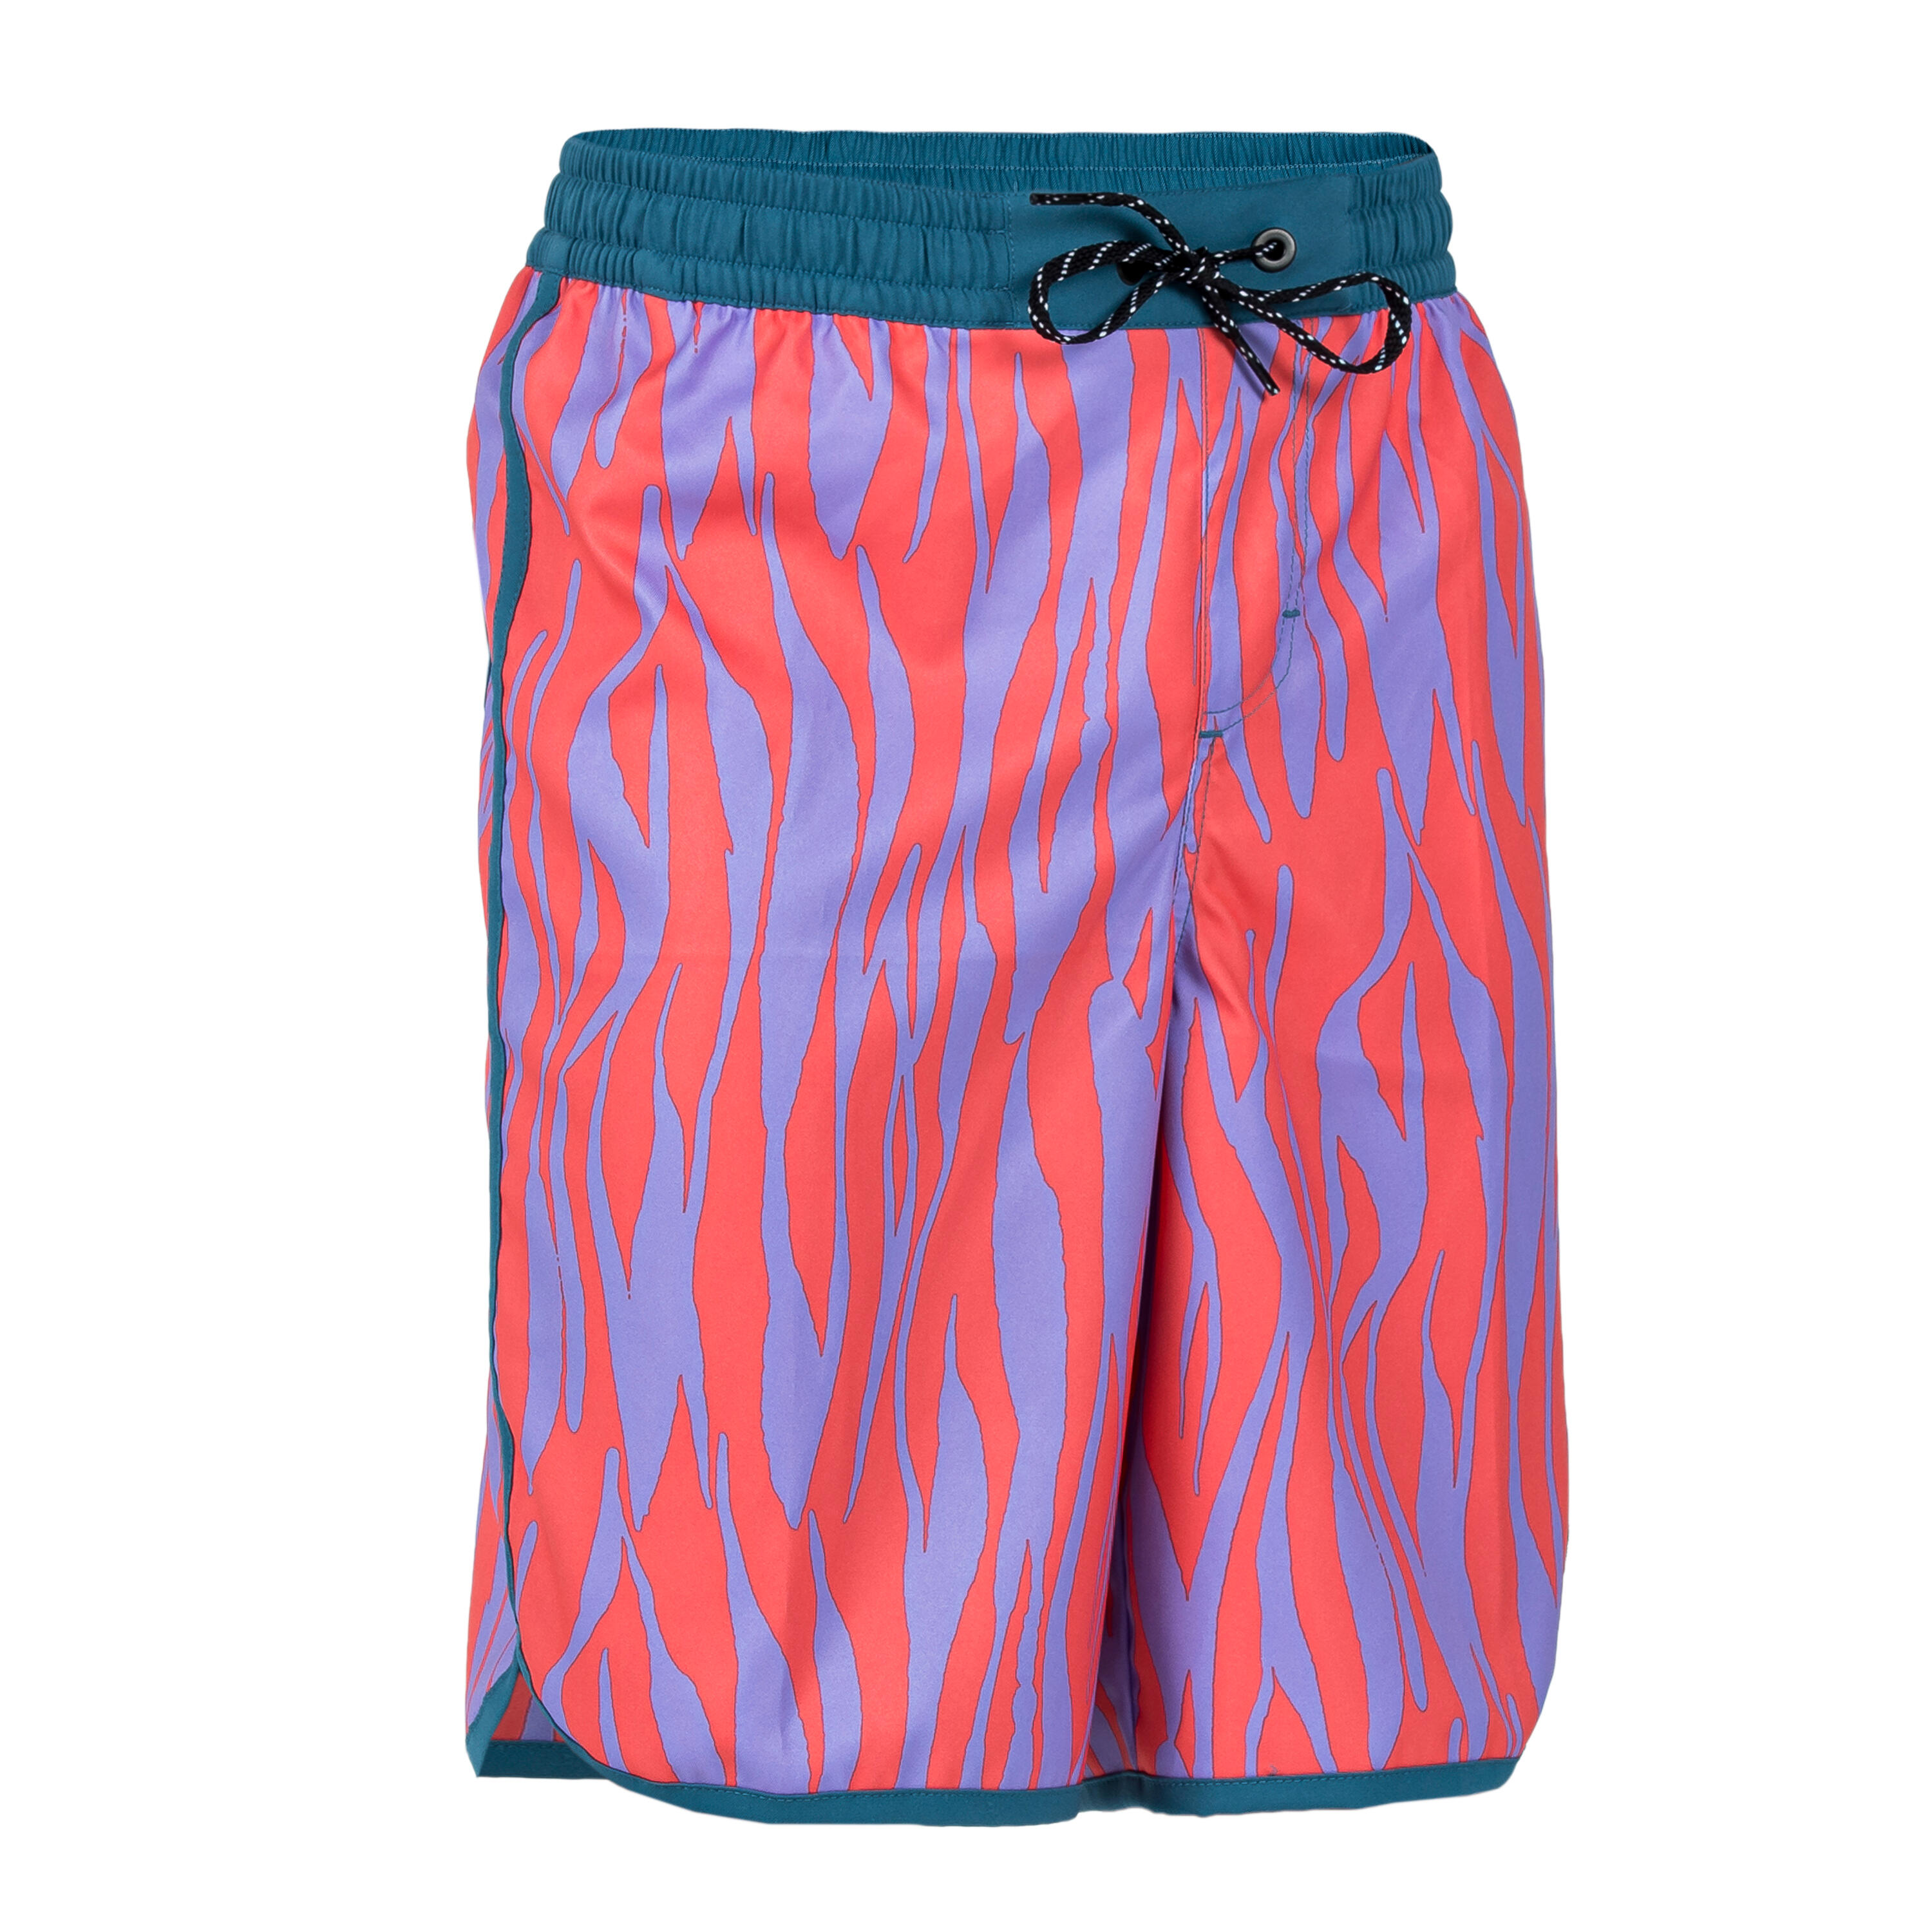 OLAIAN Boy's swim shorts - 500 zebra red purple